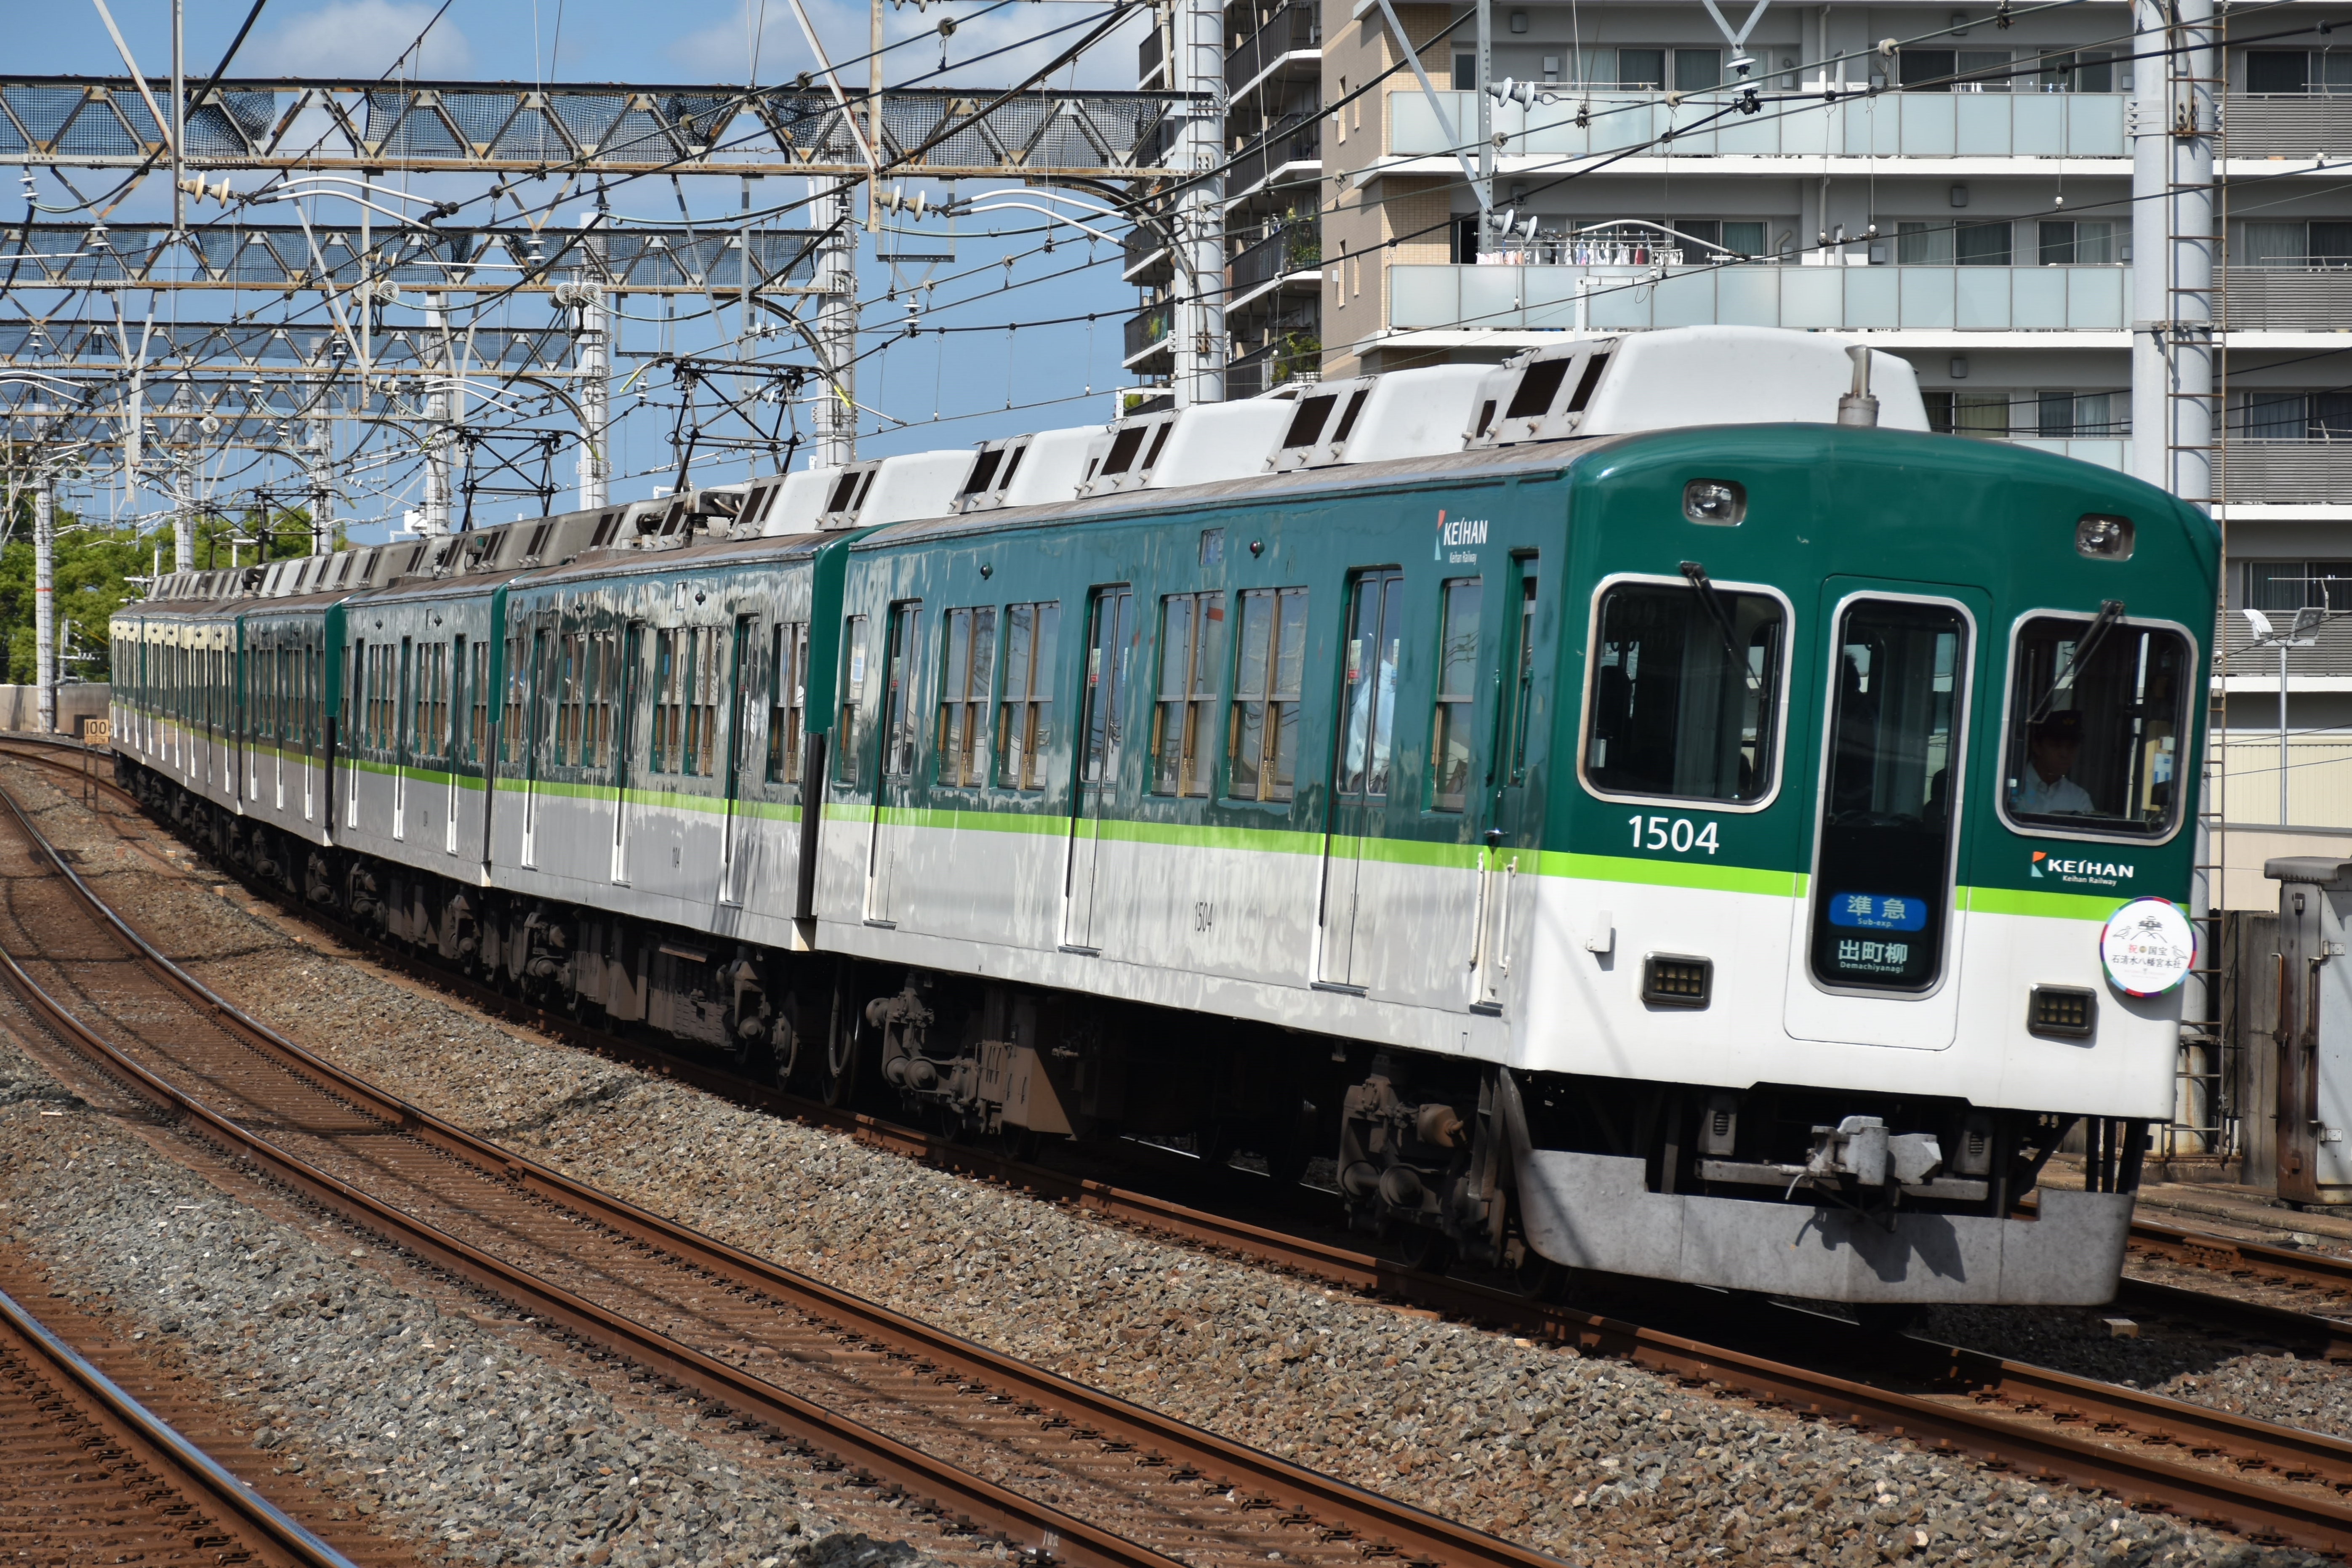 京阪1000系電車 (3代) - Wikipedia